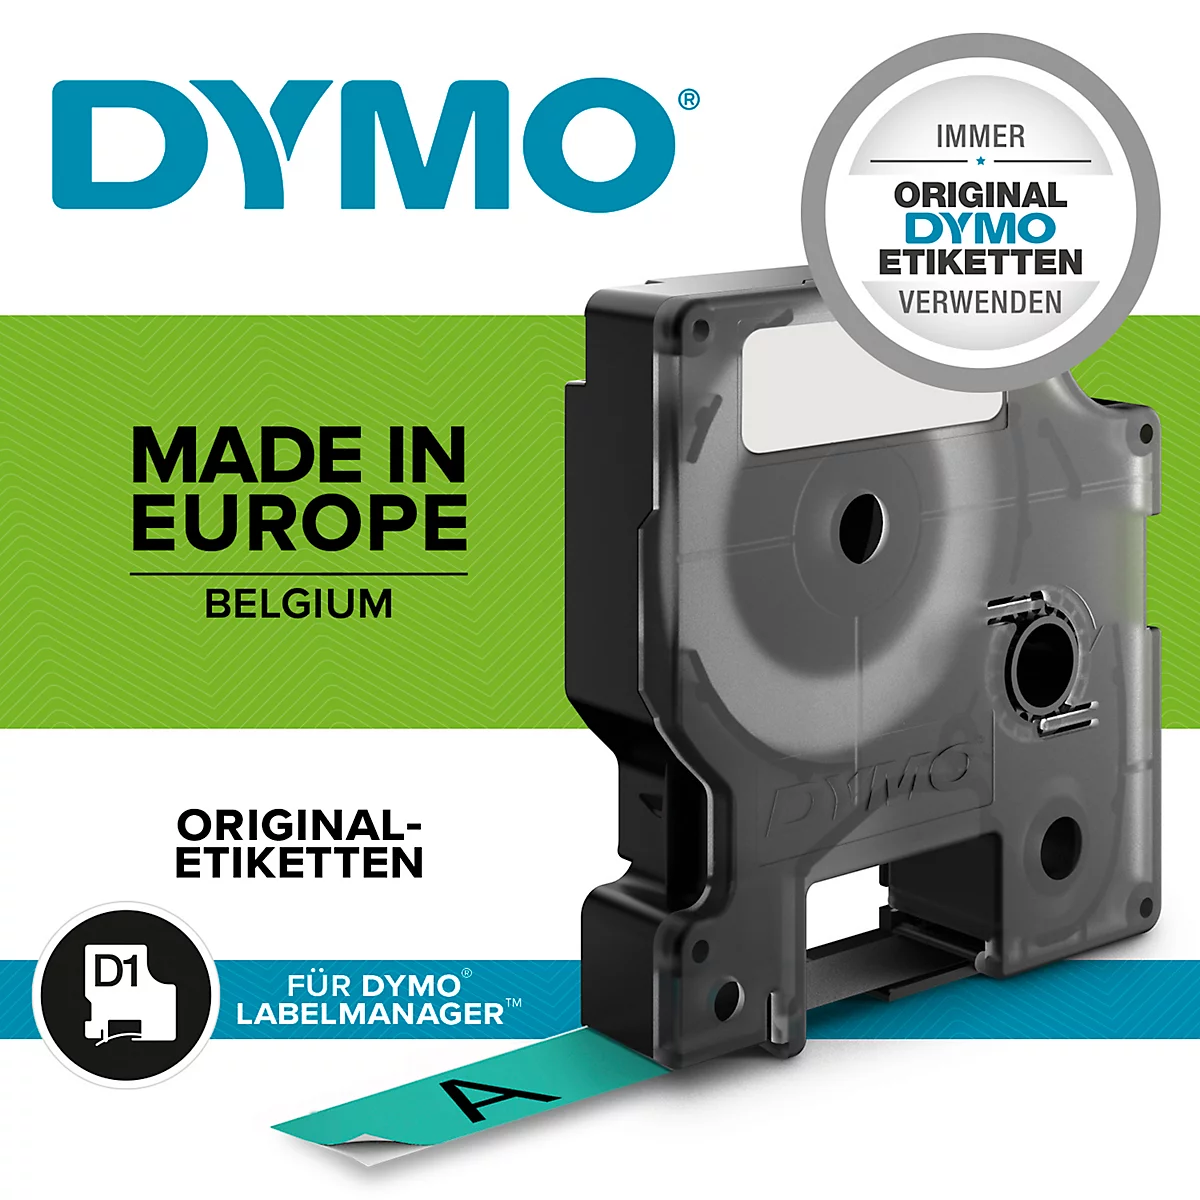 DYMO® Schriftbandkassette D1 45019, 12 mm breit, grün/schwarz